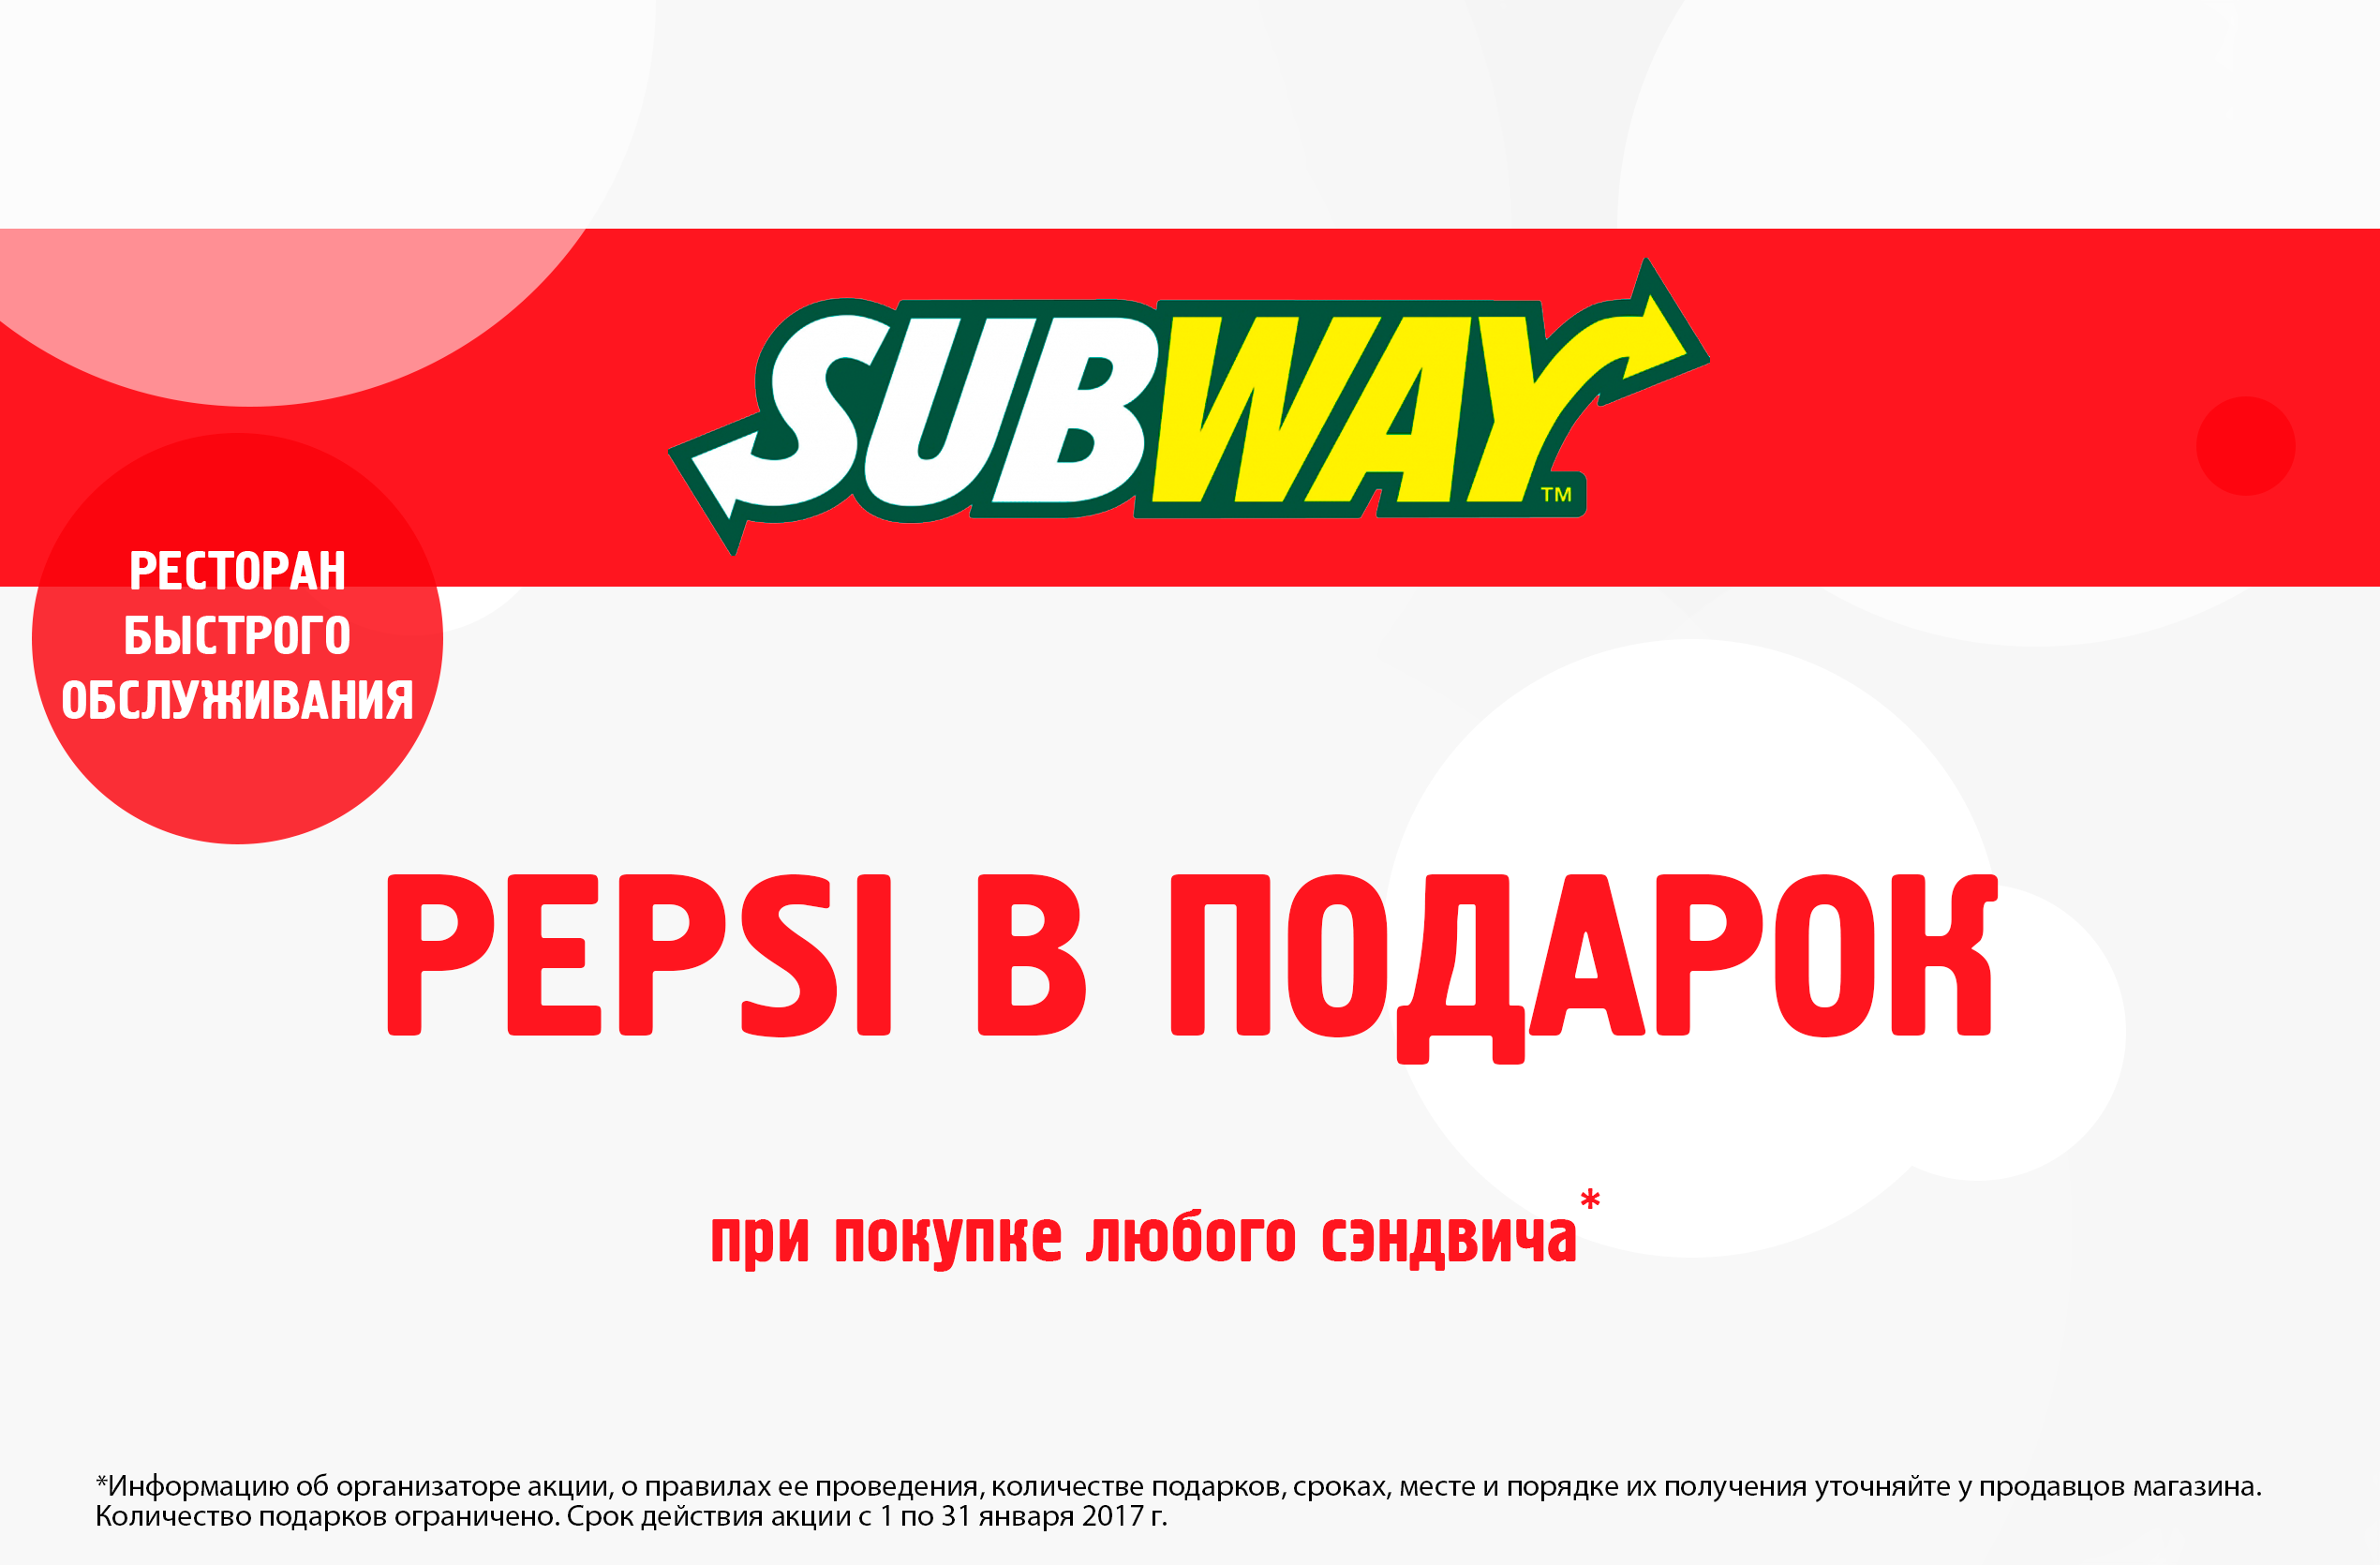 Subway, Pepsi в подарок